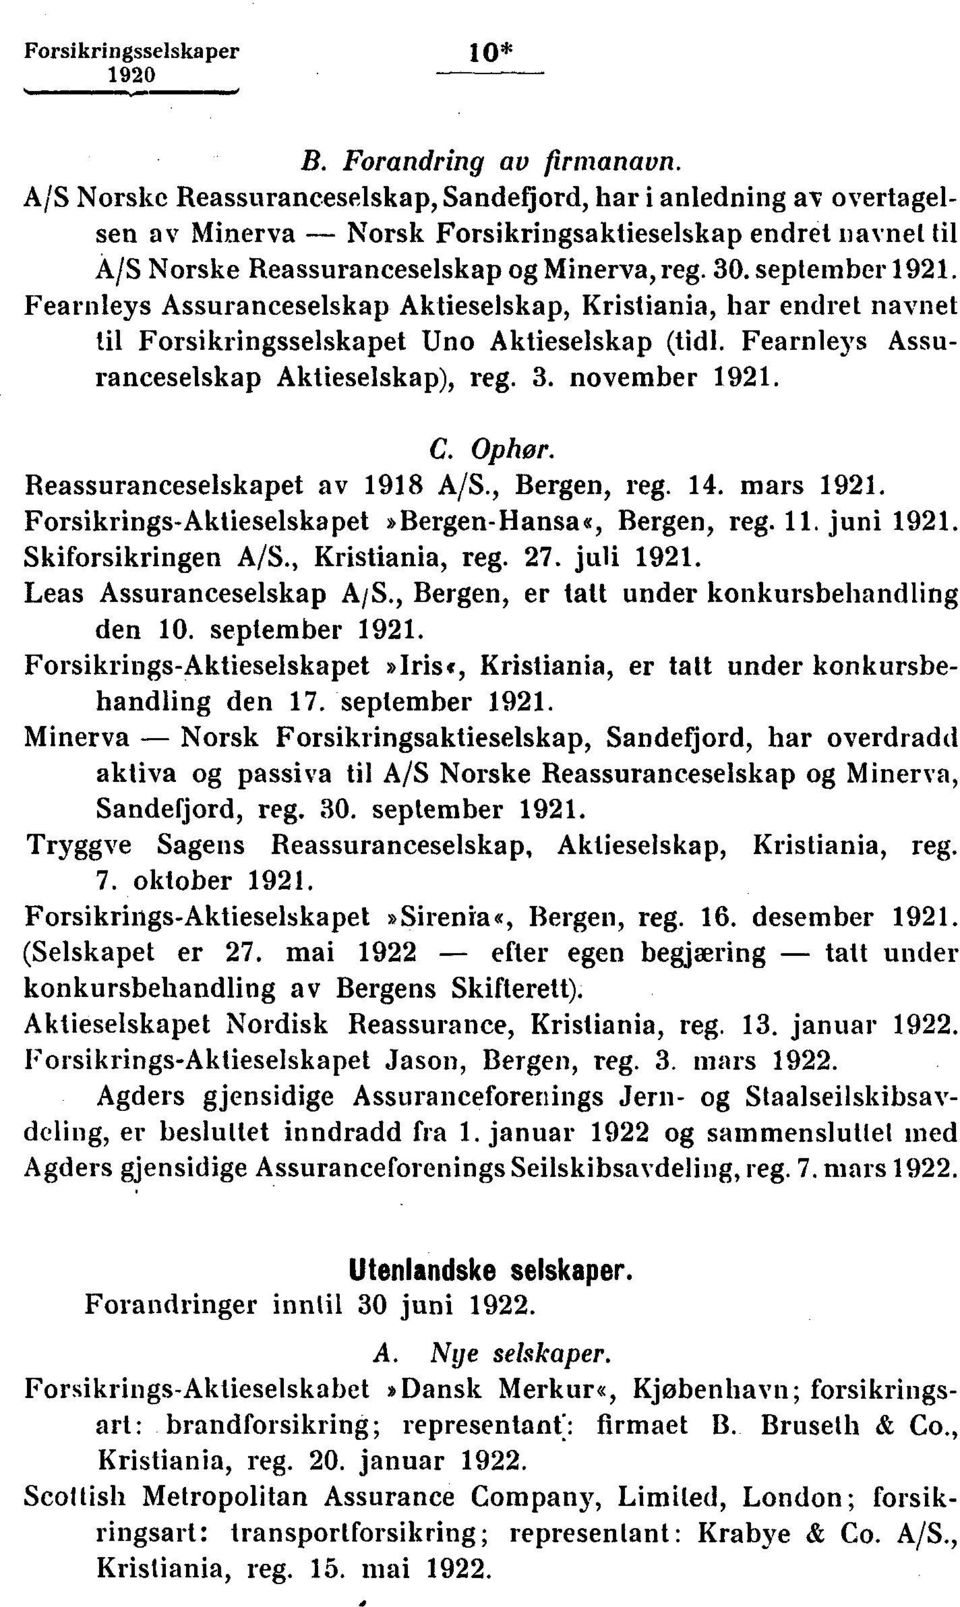 Fearnleys Assuranceselskap Aktieselskap, Kristiania, har endret navnet til Forsikringsselskapet Uno Aktieselskap (tidl. Fearnleys Assuranceselskap Aktieselskap), reg.. november 191. C. Ophor.